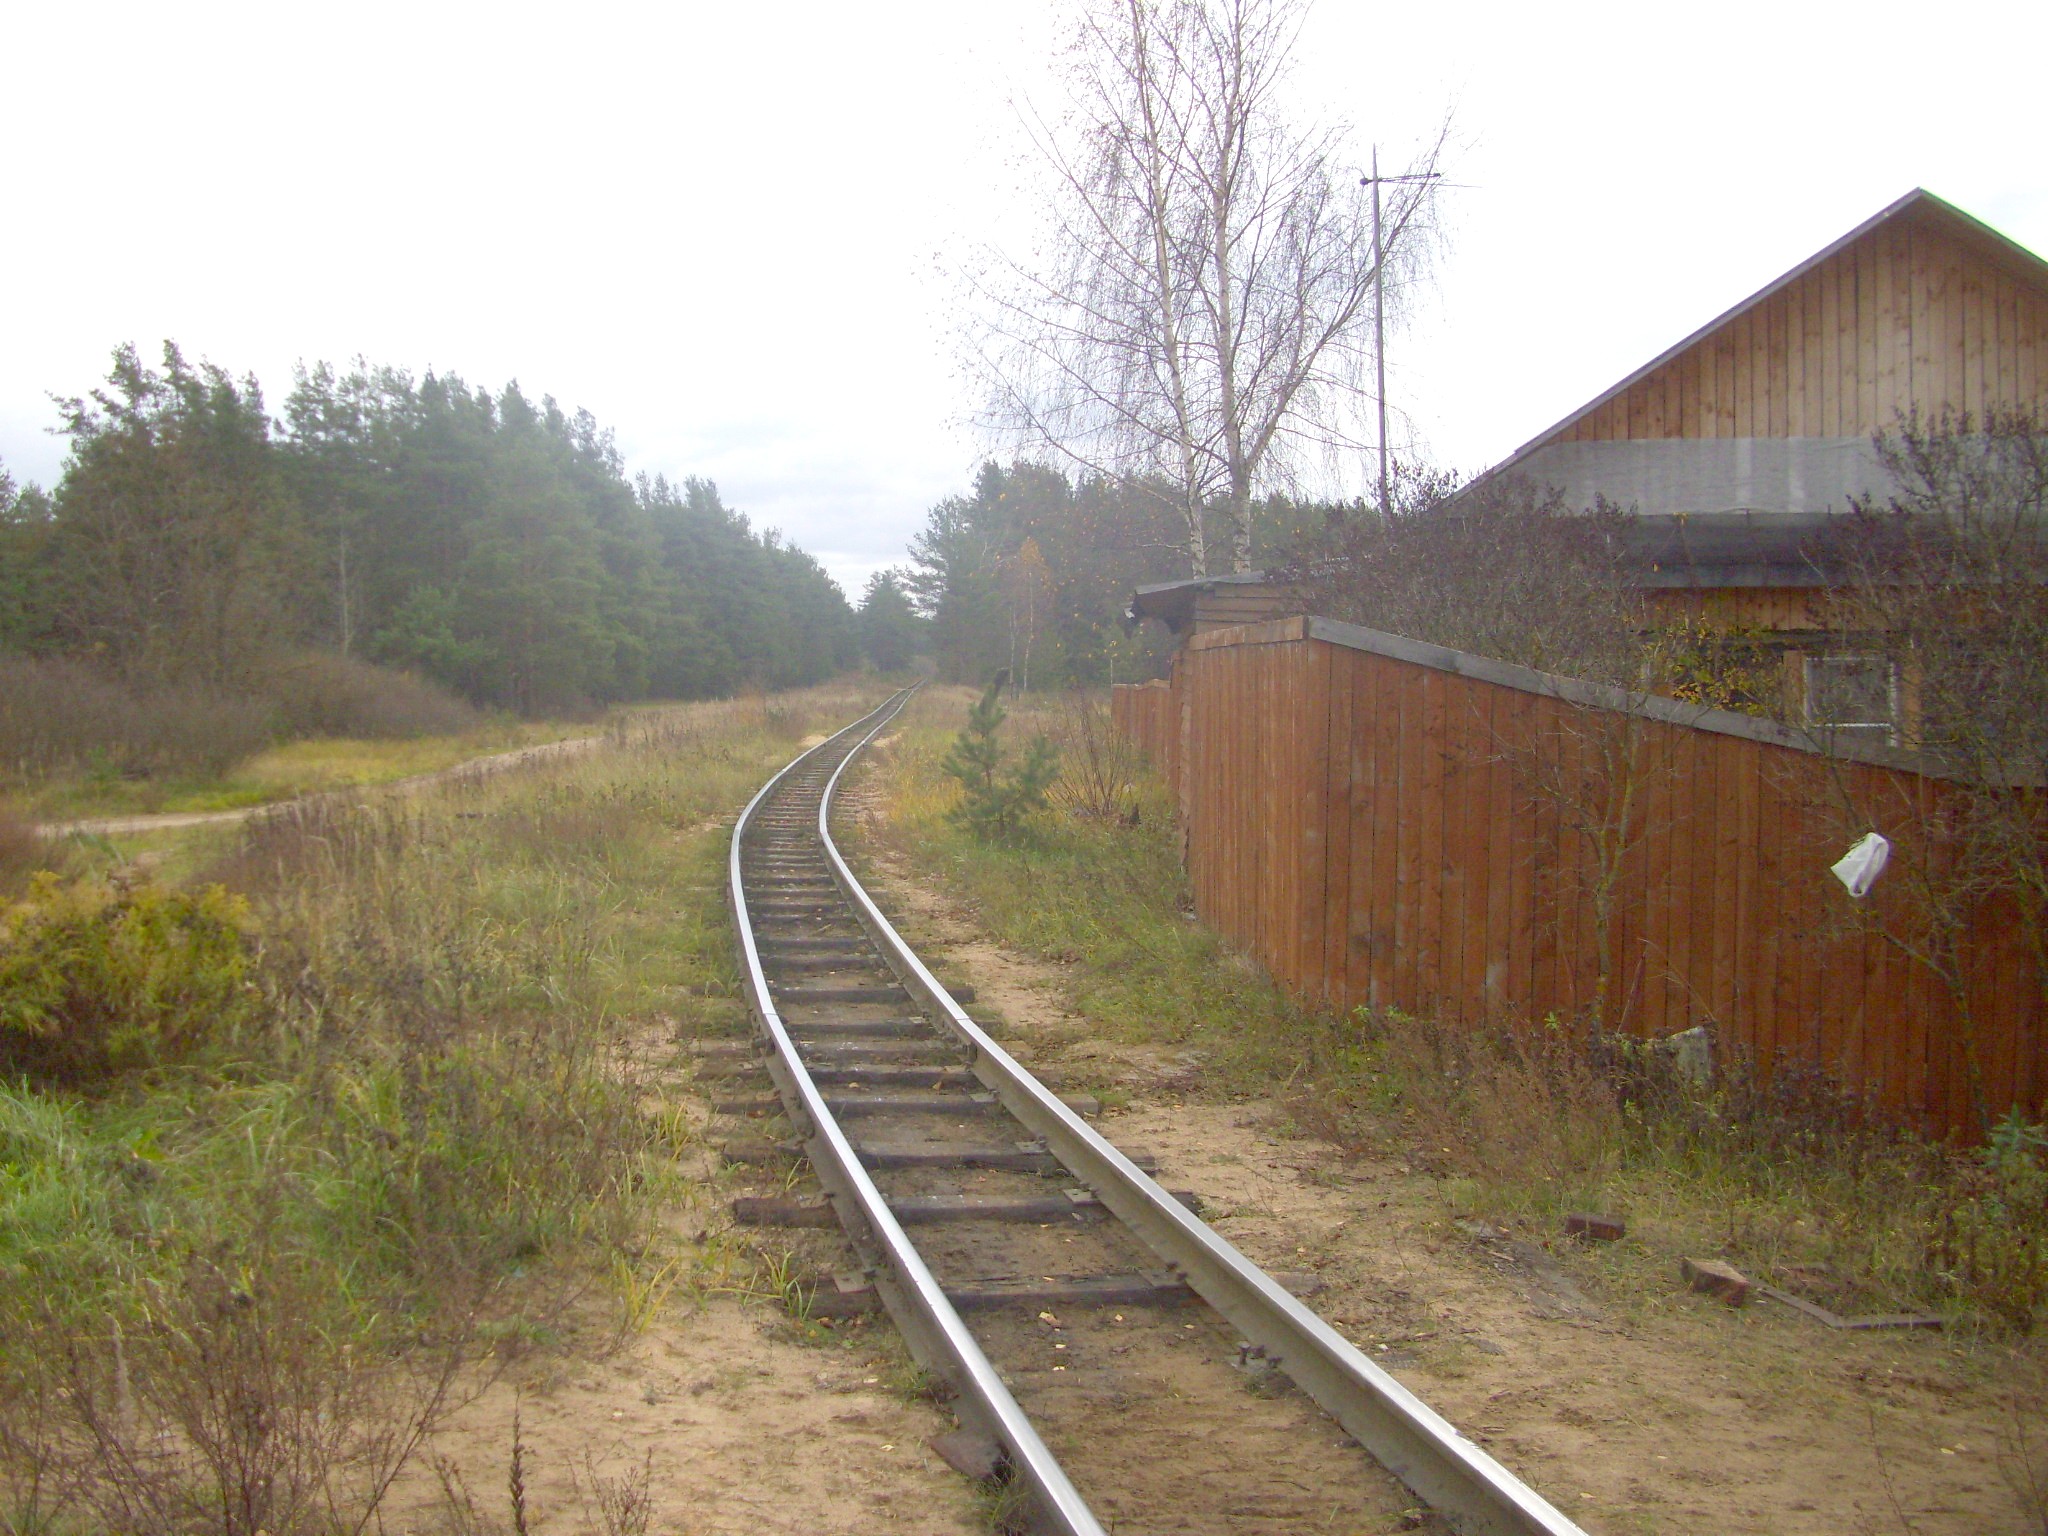 Узкоколейная железная дорога  Тверского комбината строительных материалов №2 — фотографии, сделанные в 2011 году (часть 4)